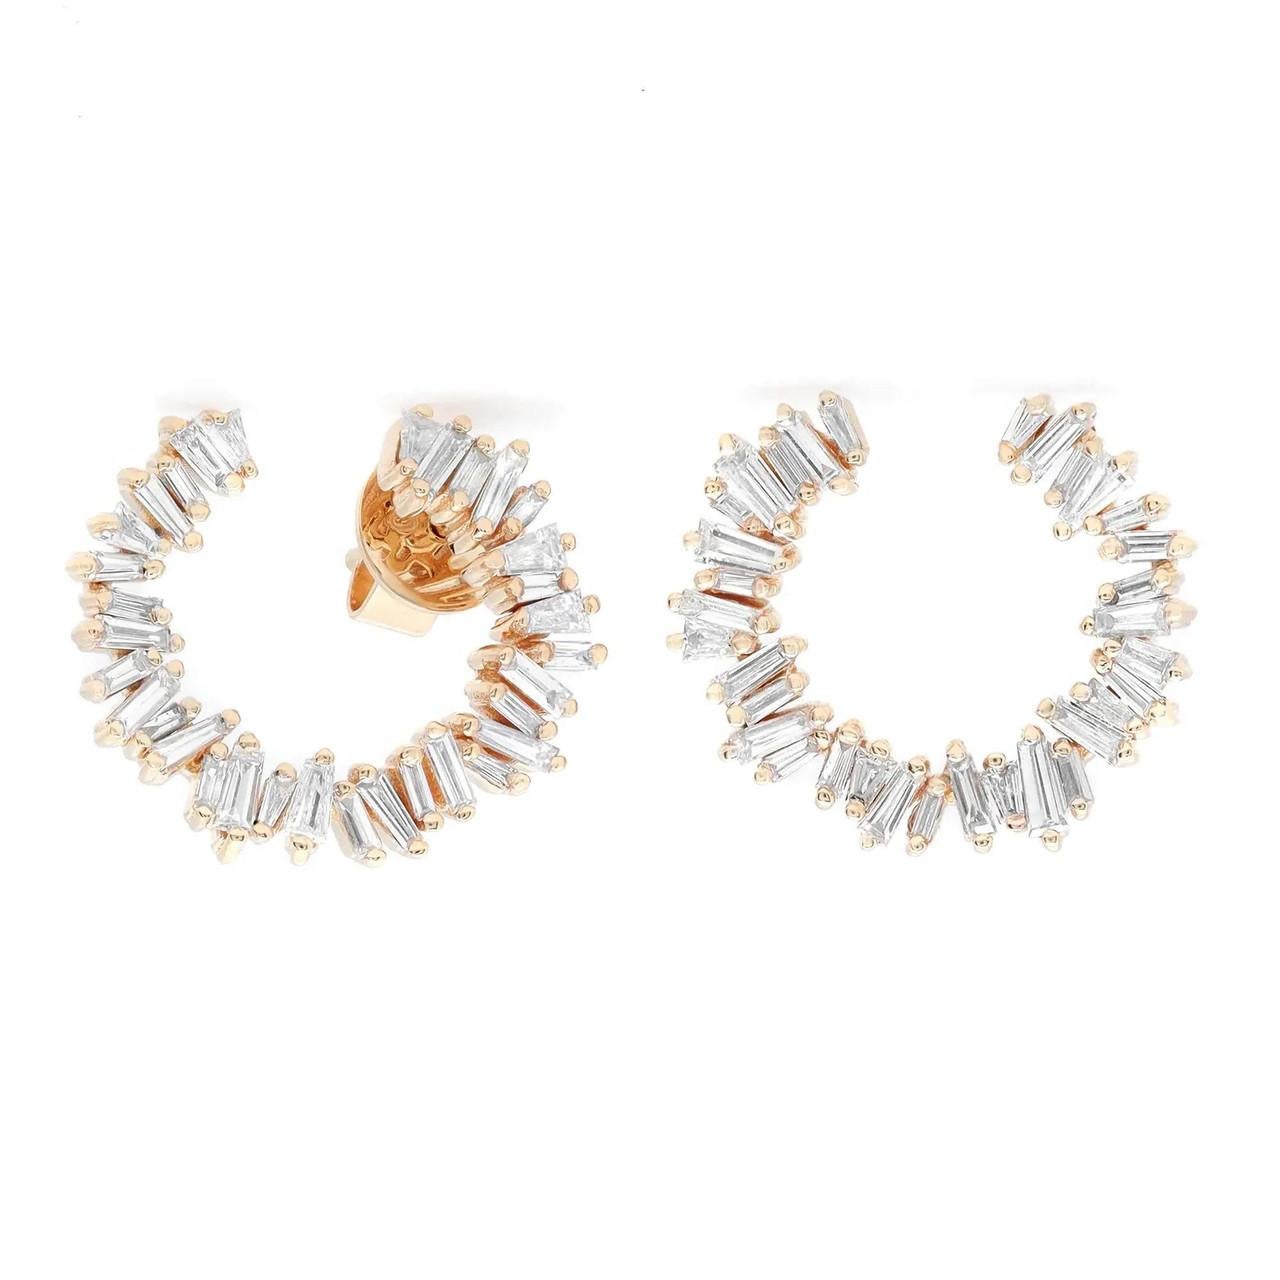 Modern 1.00 Carat Baguette Cut Diamond Stud Earrings in 18K Yellow Gold For Sale